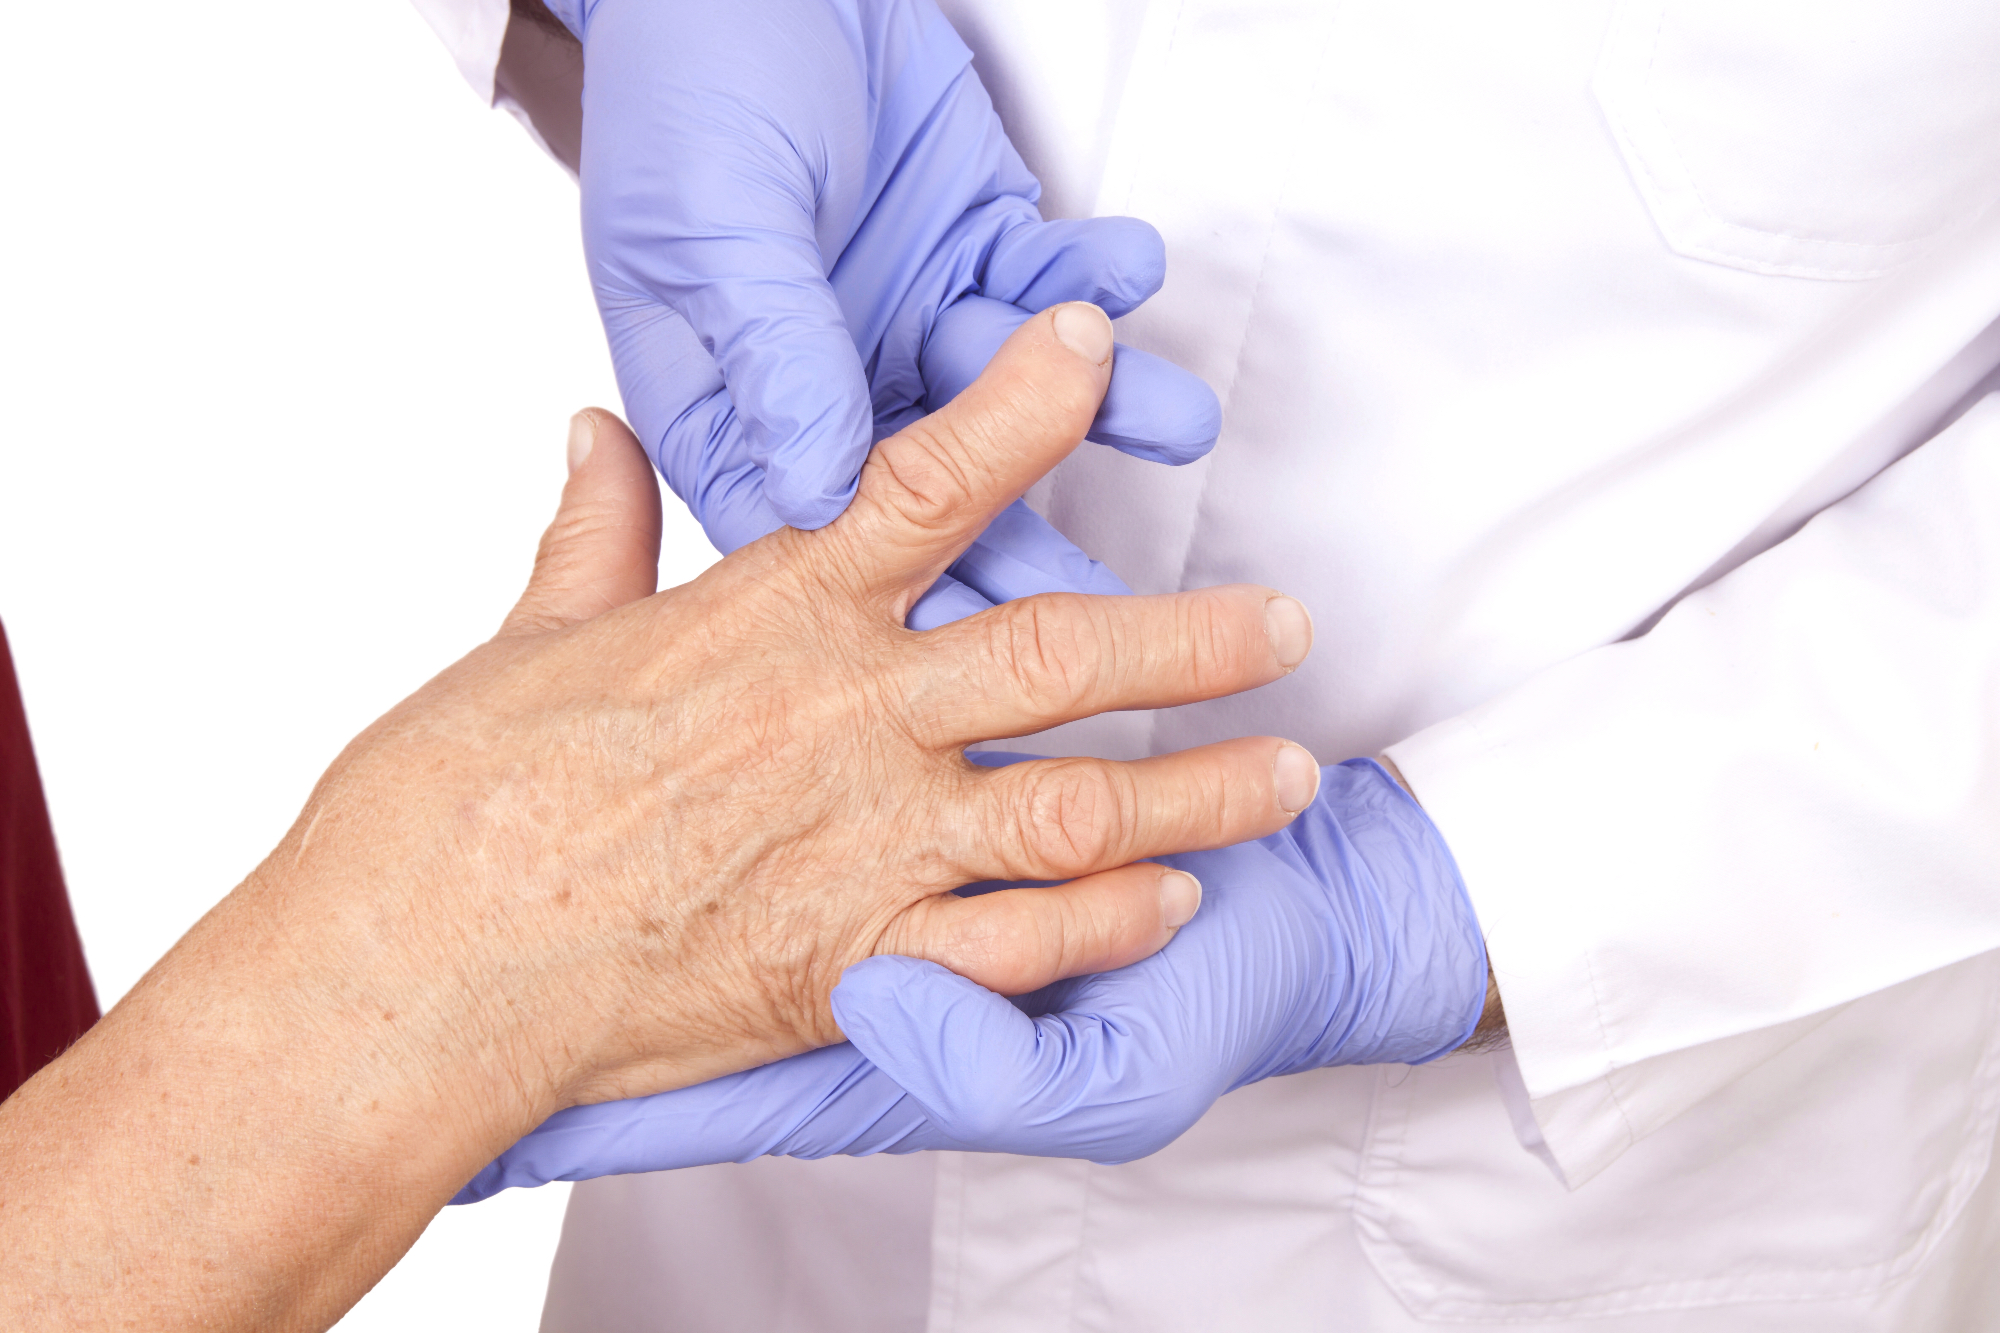 Na revmatoidni artritis lahko vpliva predvsem dednost in spol